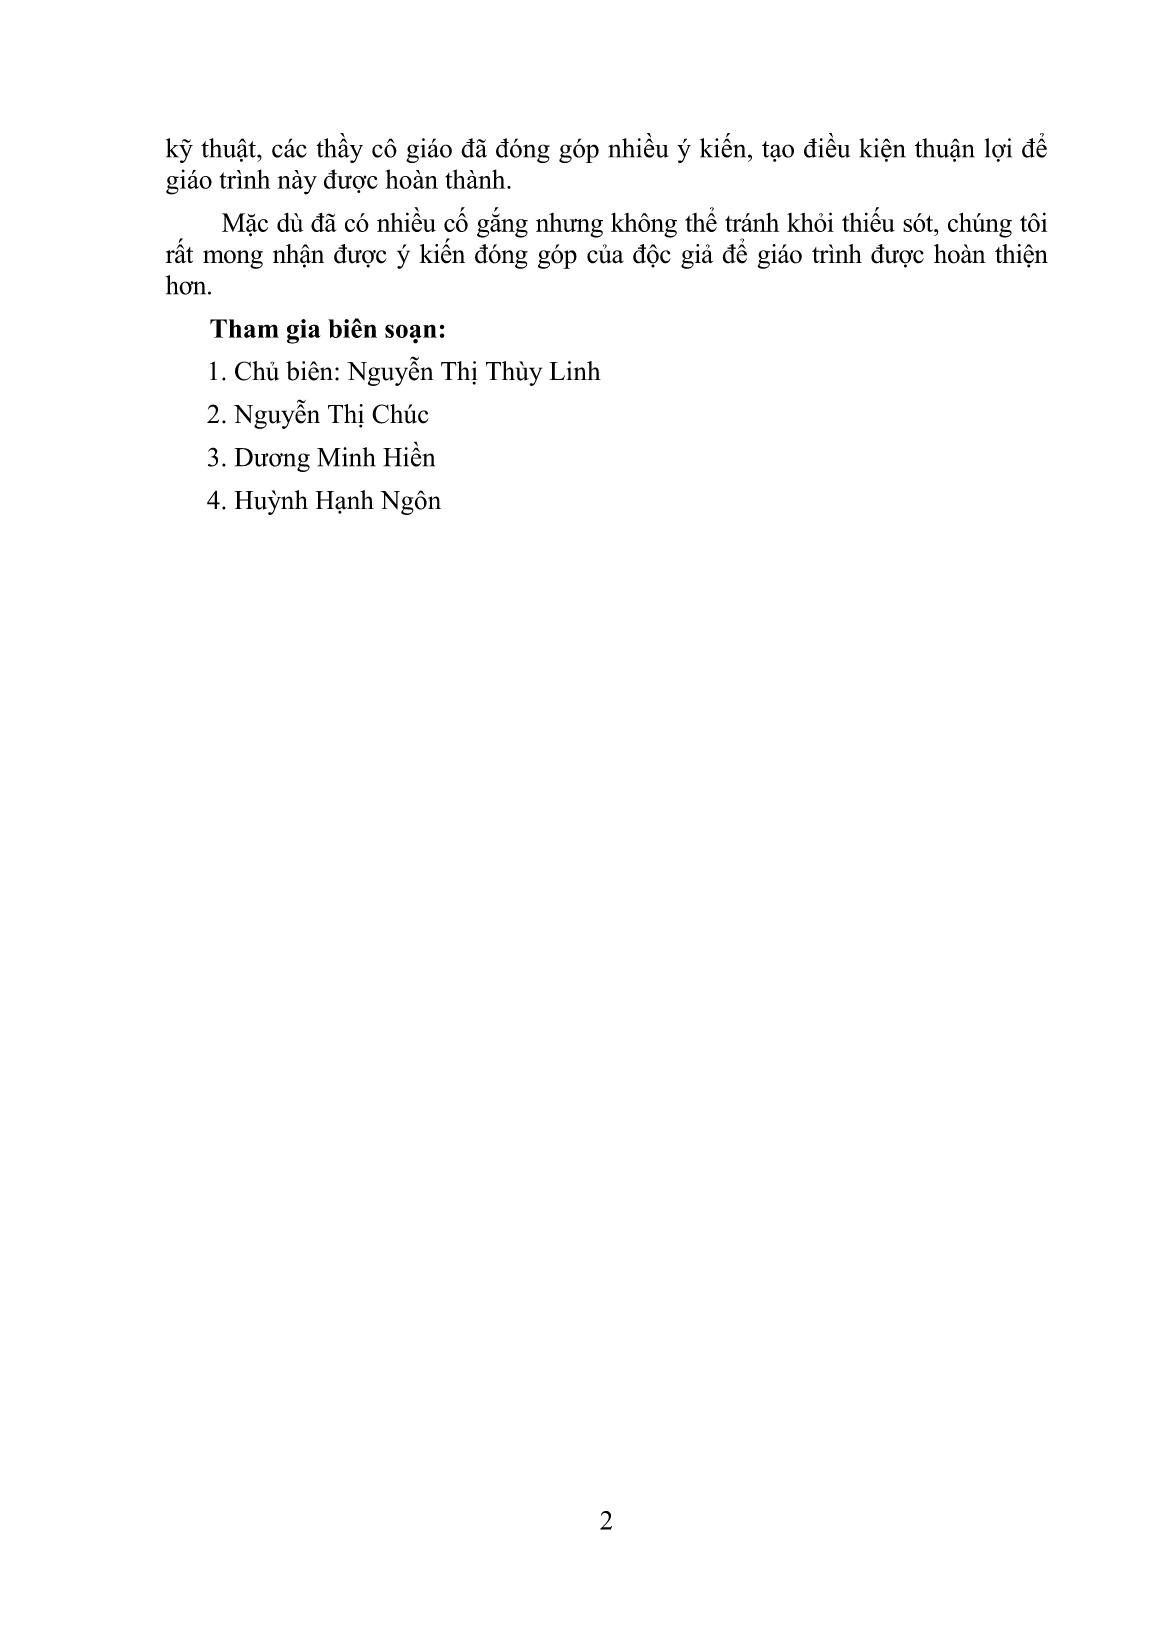 Giáo trình mô đun Lựa chọn và xây dựng chuồng nuôi trùn (Trình độ: Sơ cấp nghề) trang 4